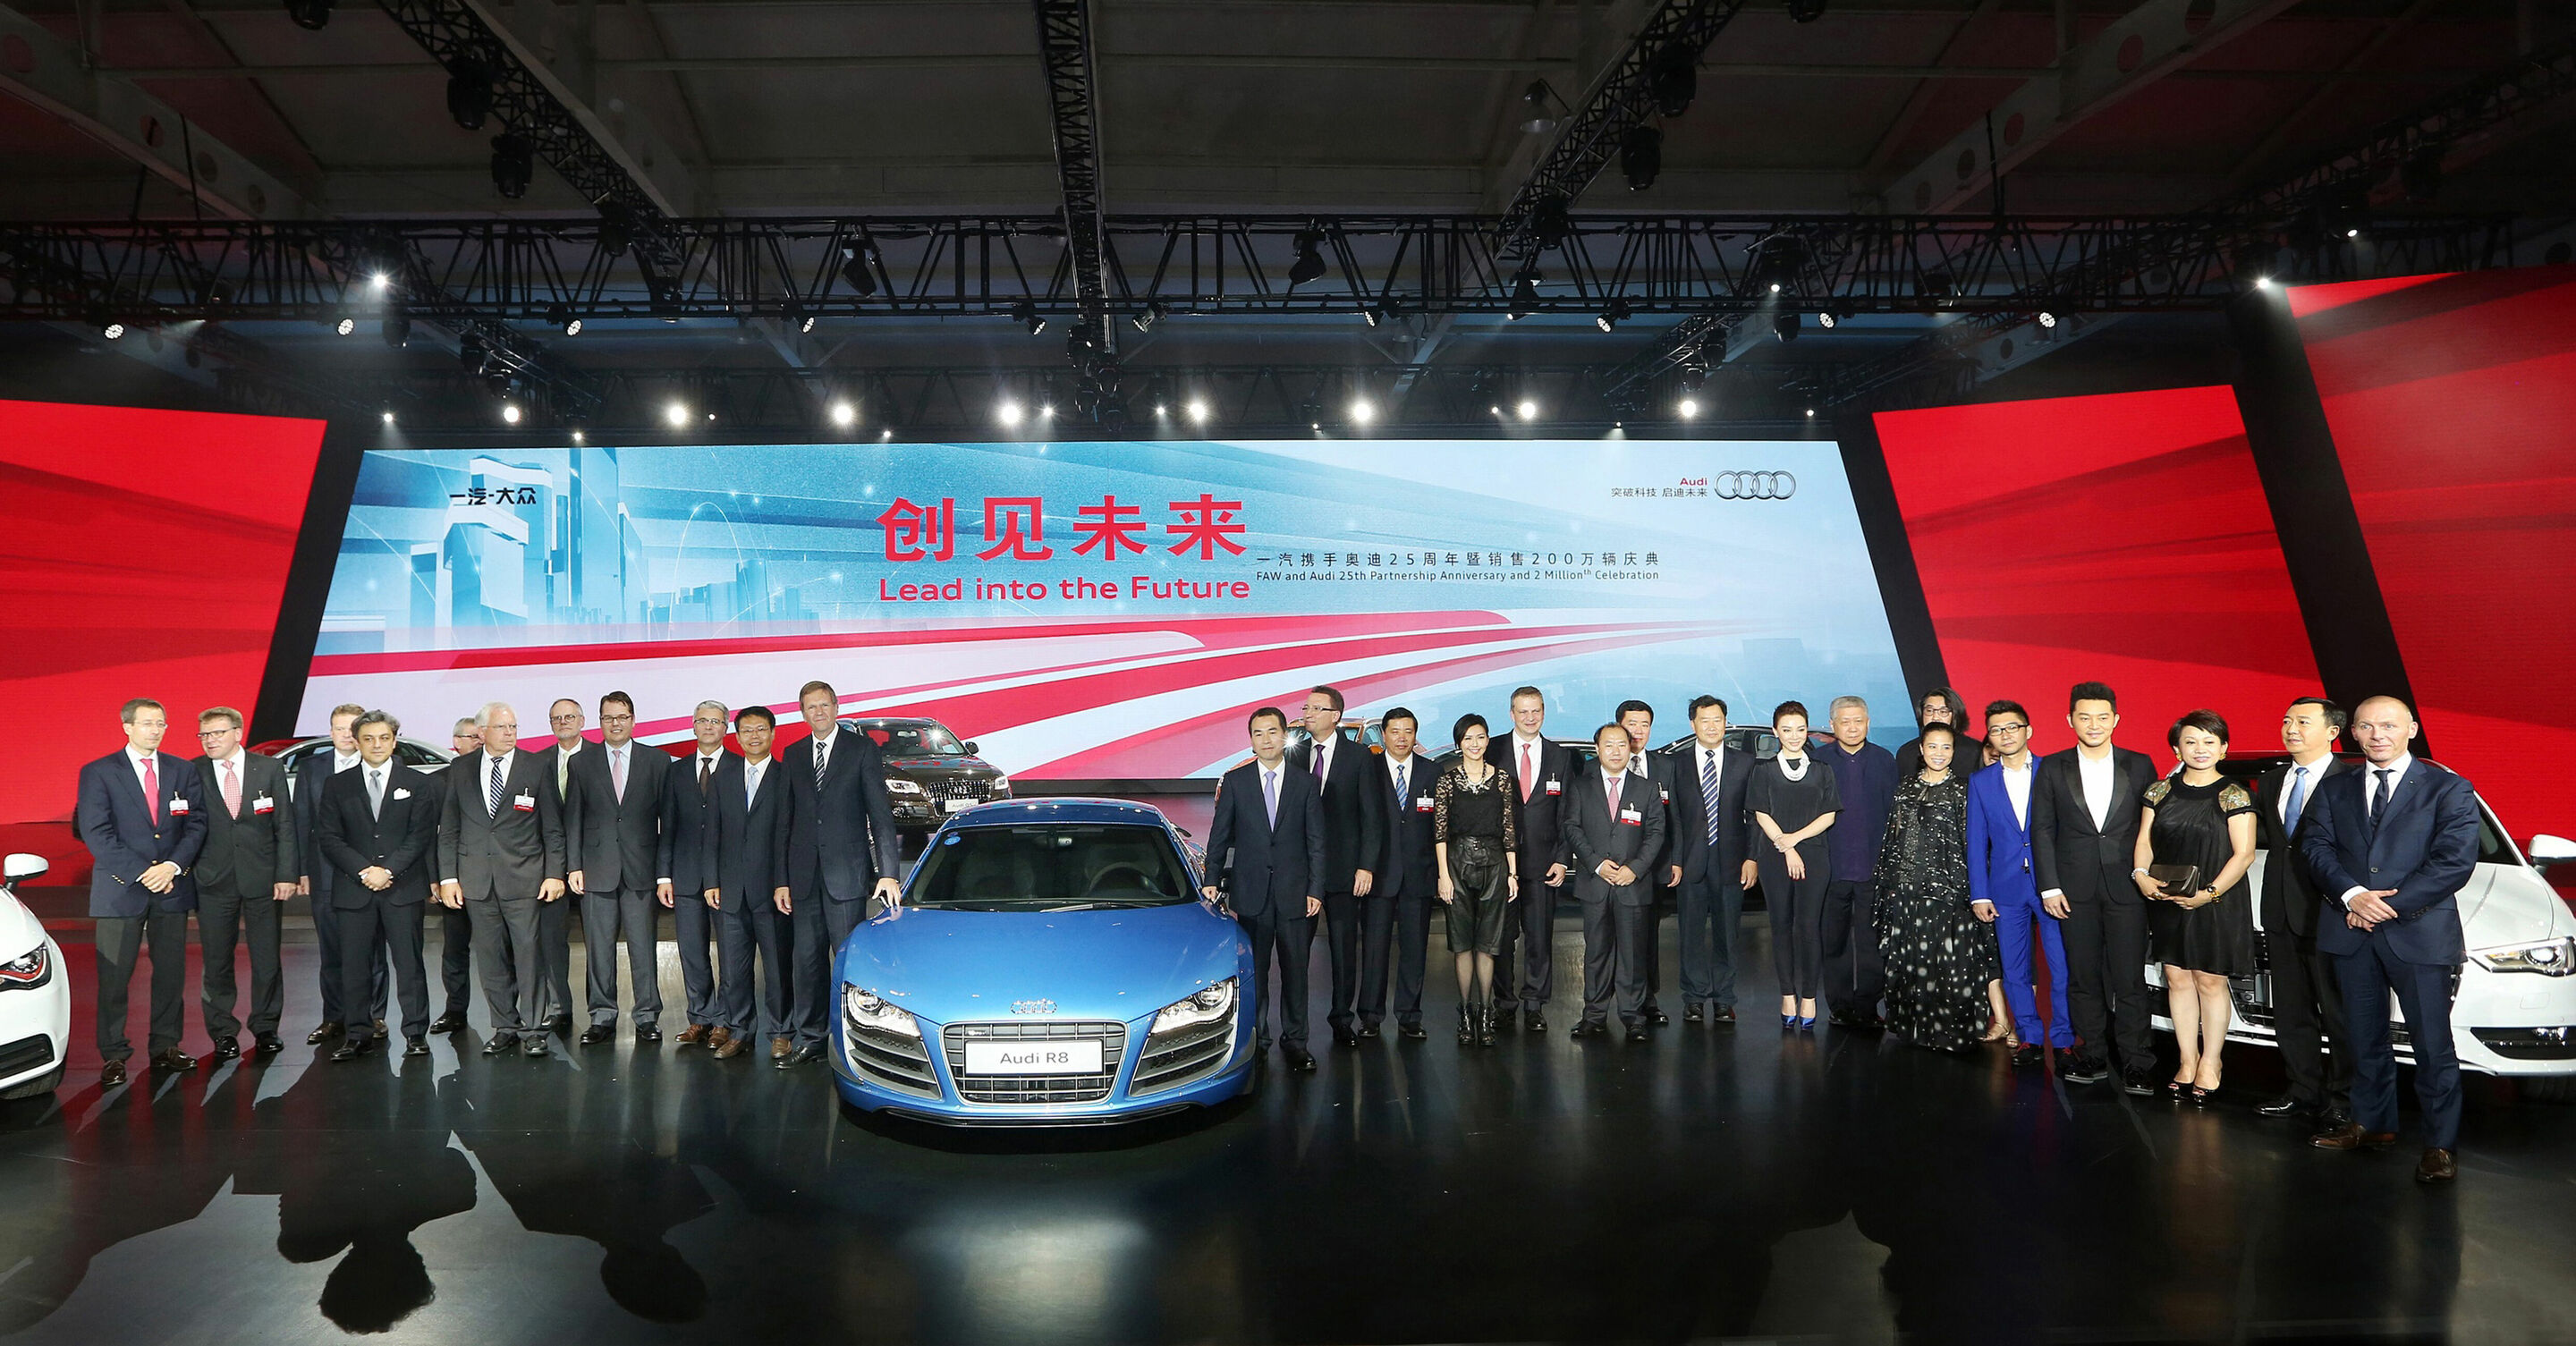 Audi feiert das 25-jährige Bestehen der Partnerschaft mit First Automotive Works (FAW). Gleichzeitig liefert Audi heute das zweimillionste Automobil in China an einen Kunden aus, einen lokal produzierten Audi A6 L. Beide Unternehmen kündigen an, gemeinsam an einem Plug-in-Hybrid-Projekt zu arbeiten.